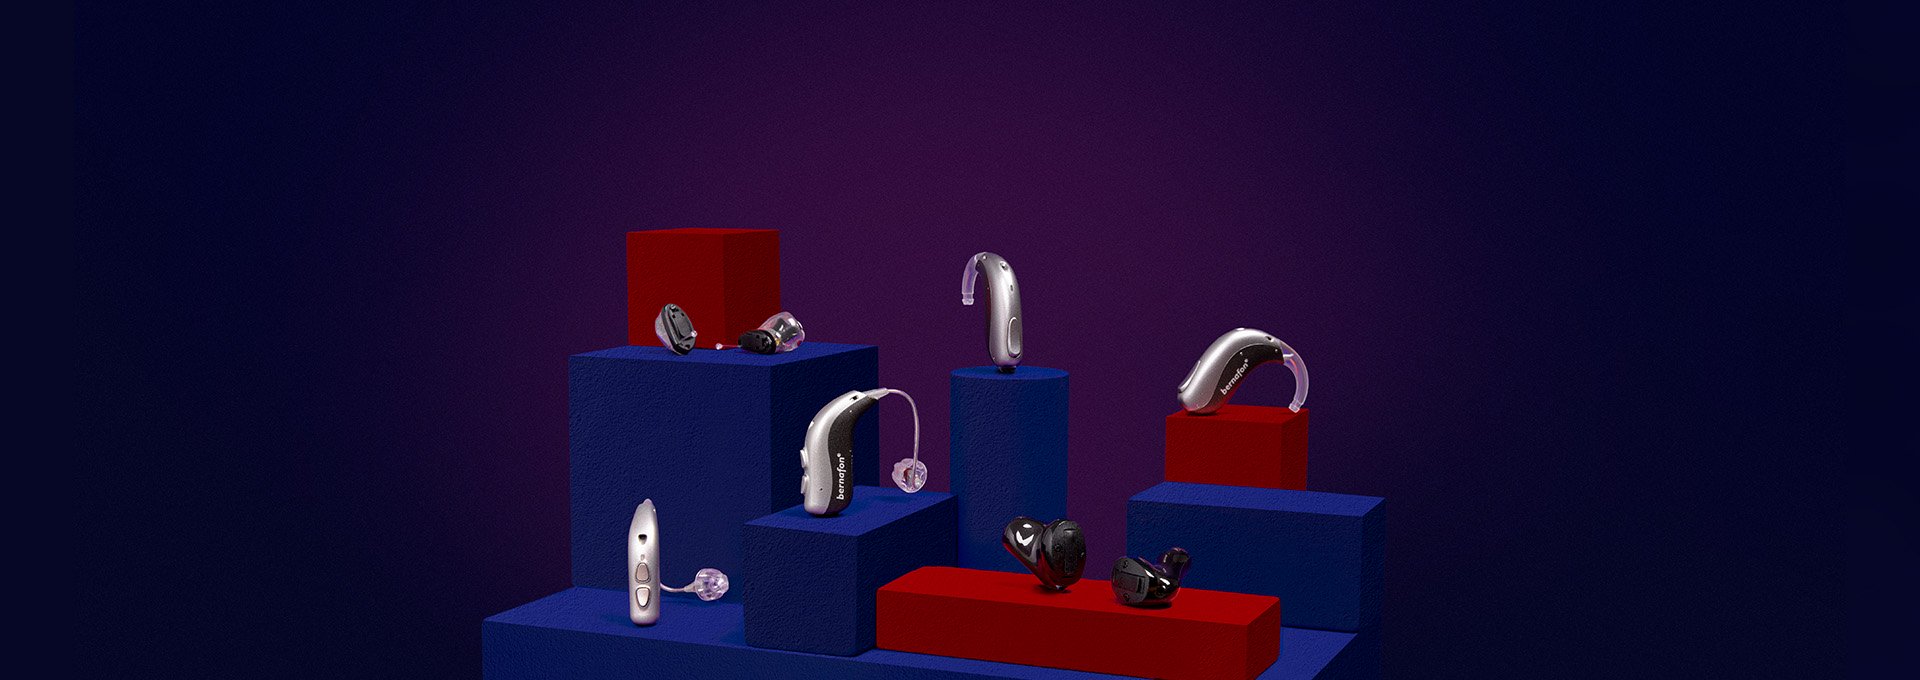 Bernafon Alpha-hörapparater i 6 modeller (IIC, ITC, miniRITE T (R), miniBTE T (R)) på röda och blå kuber med mörk bakgrund.